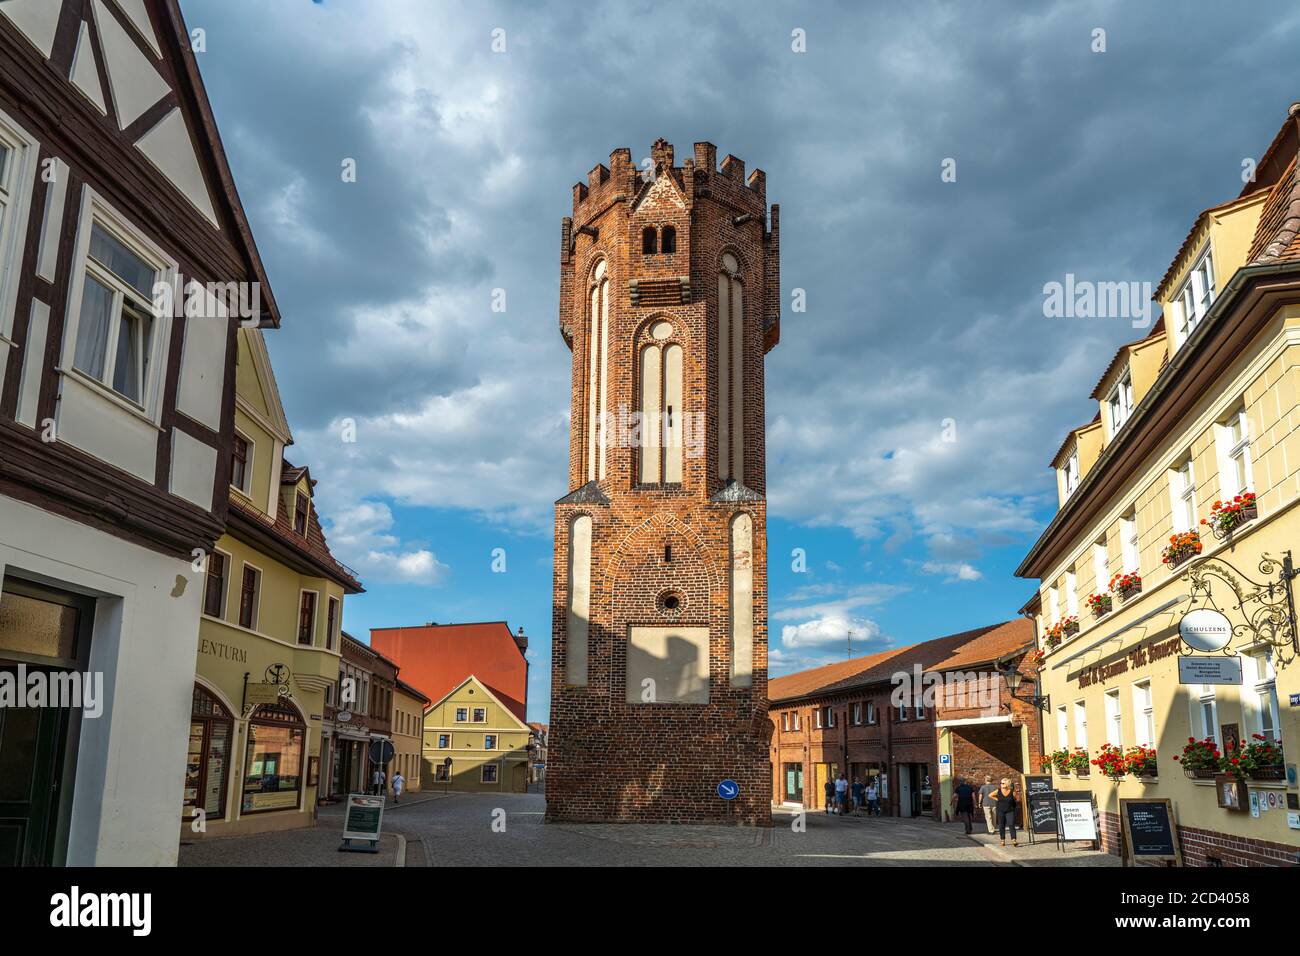 Der Eulenturm in Tangermünde, Sachsen-Anhalt, Deutschland |  Eulenturm tower Owl Tower in Tangermuende, Saxony-Anhalt, Germany Stock Photo